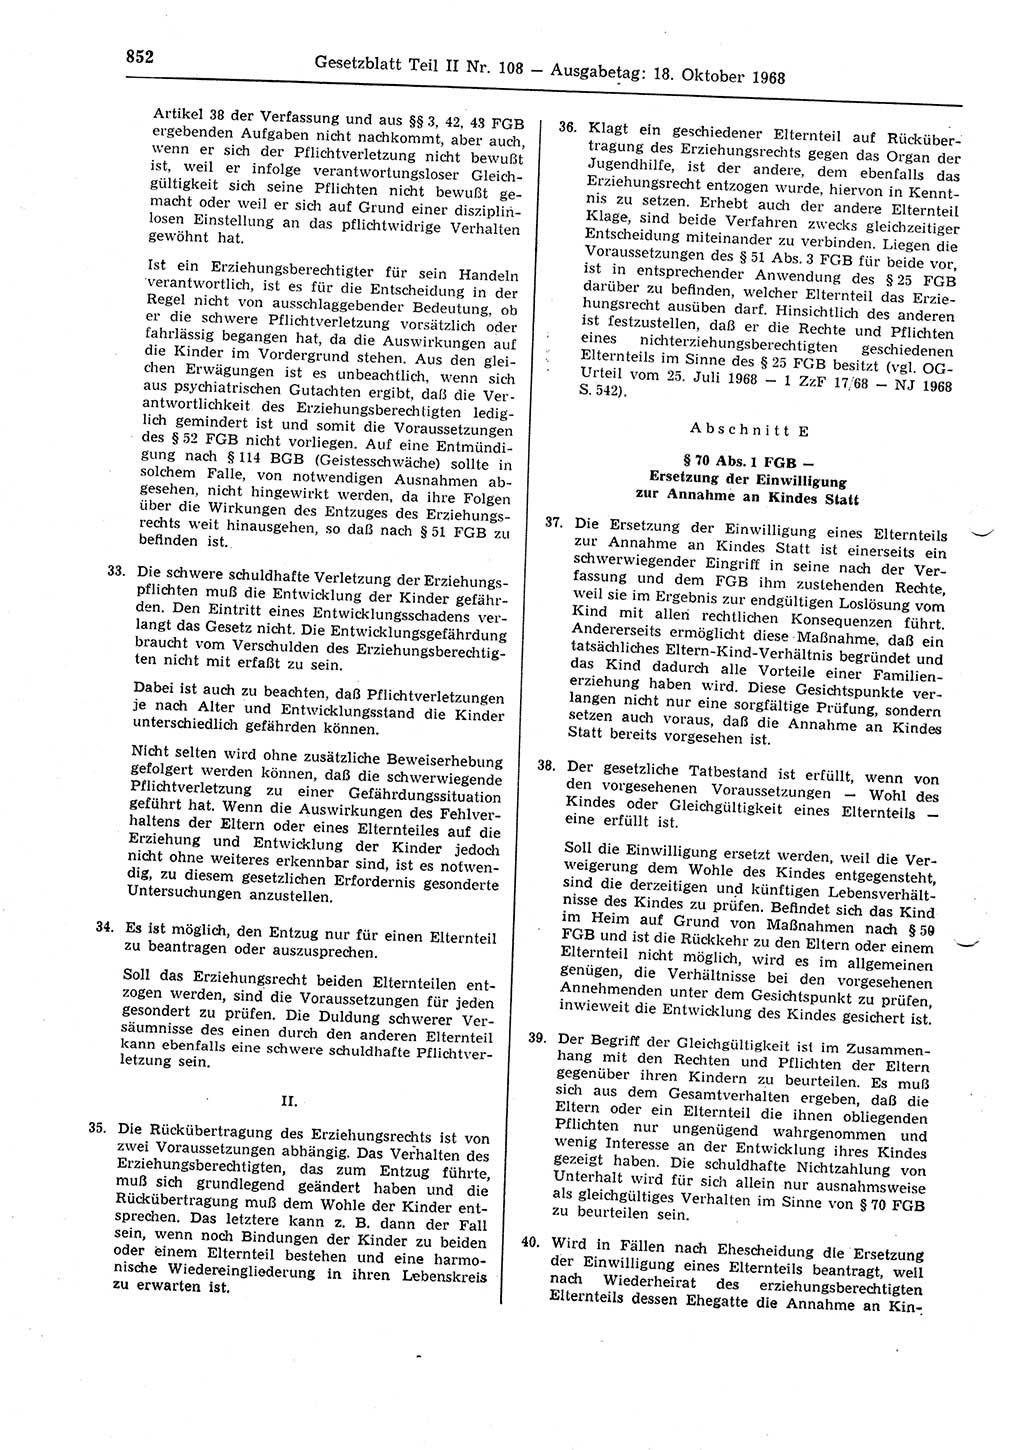 Gesetzblatt (GBl.) der Deutschen Demokratischen Republik (DDR) Teil ⅠⅠ 1968, Seite 852 (GBl. DDR ⅠⅠ 1968, S. 852)